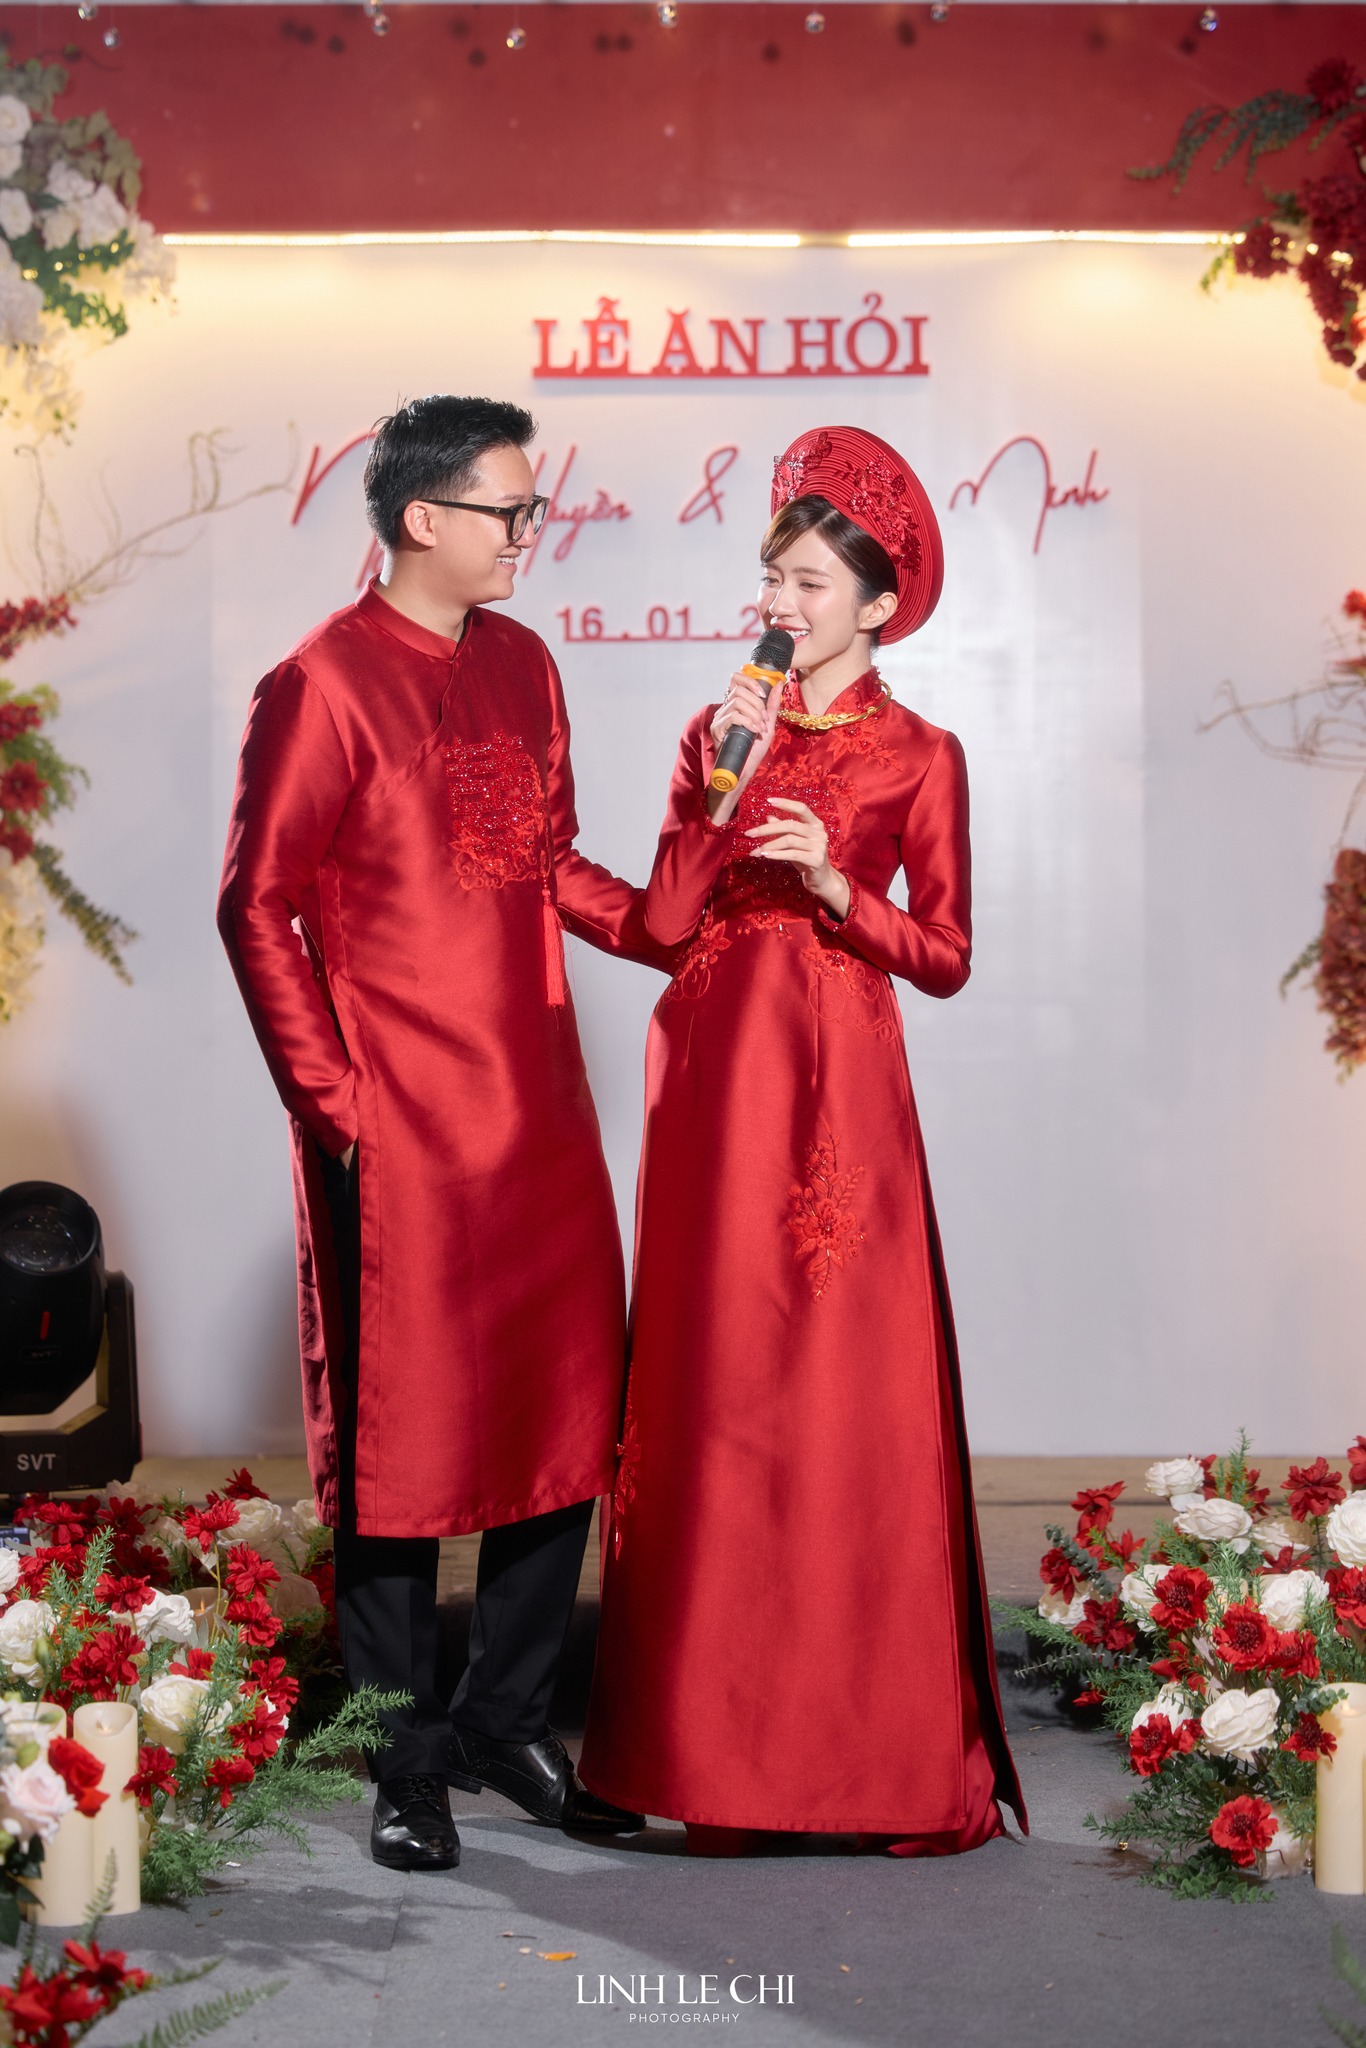 Lễ cưới ngập sắc đỏ của diễn viên Ngọc Huyền và cháu trai NSUT Chí Trung, cô dâu khóc nhận của hồi môn - ảnh 5